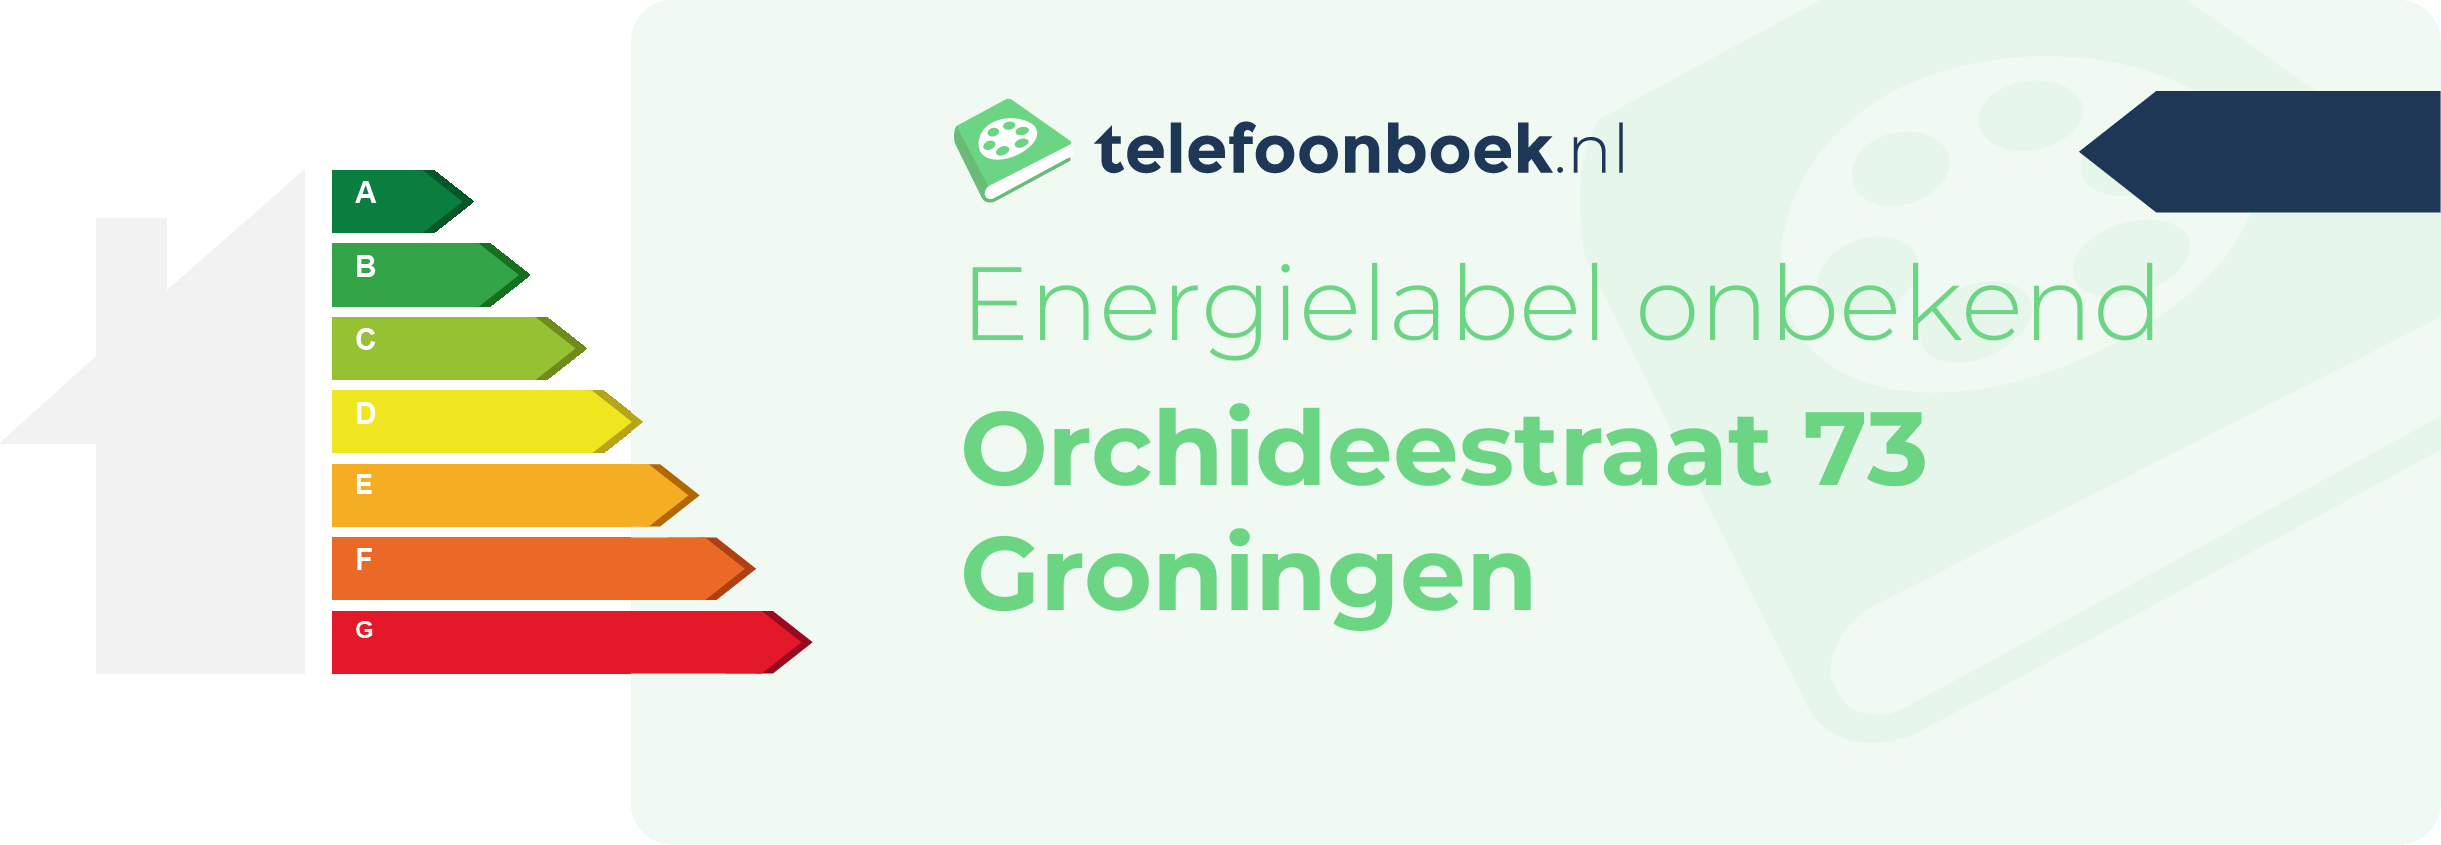 Energielabel Orchideestraat 73 Groningen